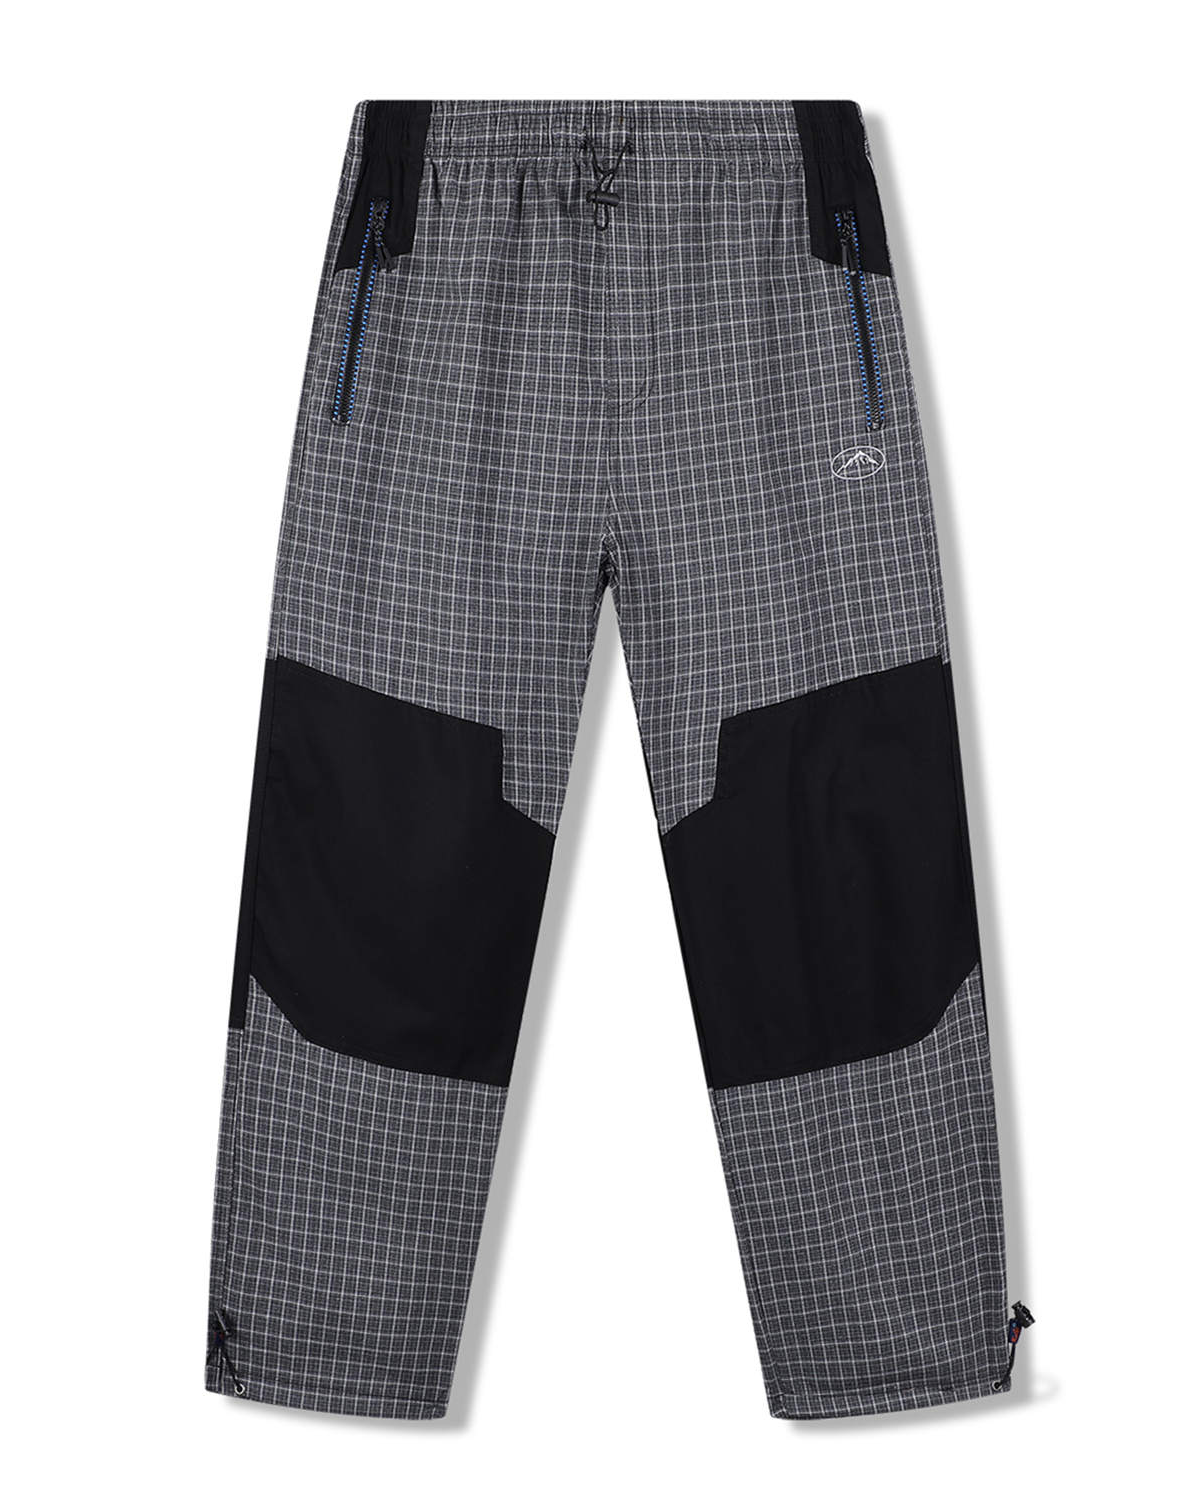 Pánské plátěné kalhoty - KUGO FK7611, šedá / modré zipy Barva: Šedá, Velikost: XL